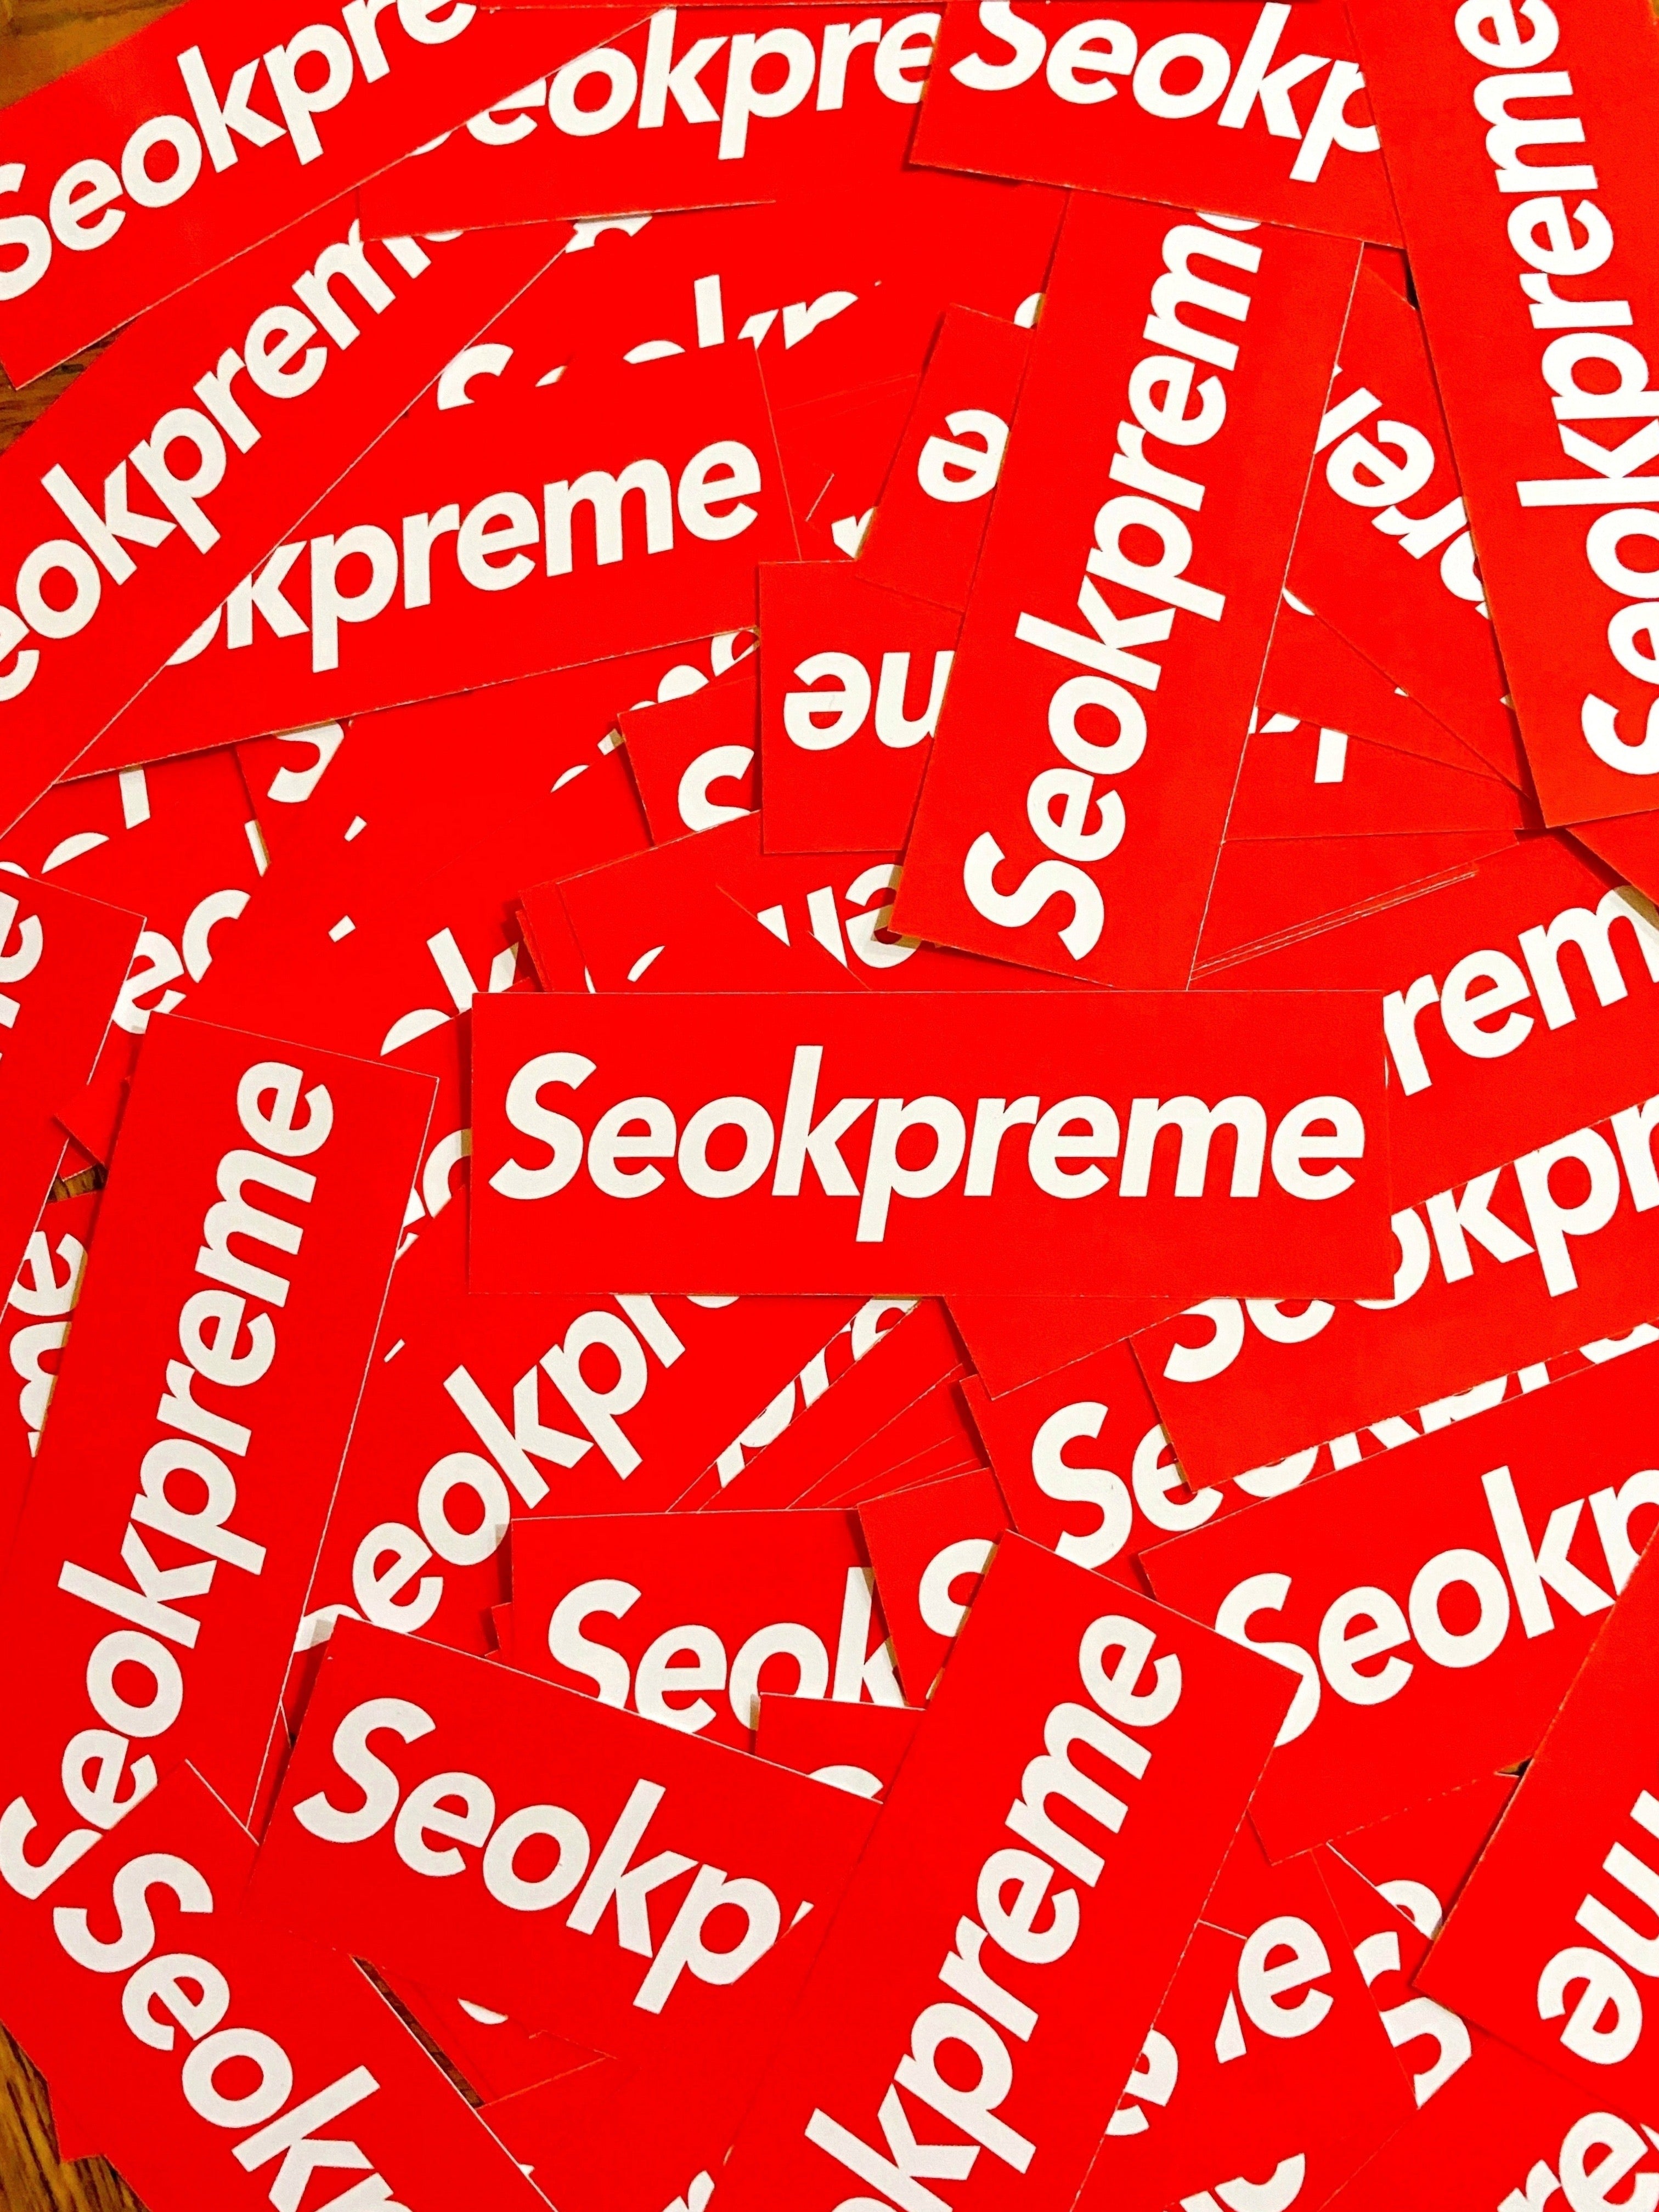 Seokpreme Stickers